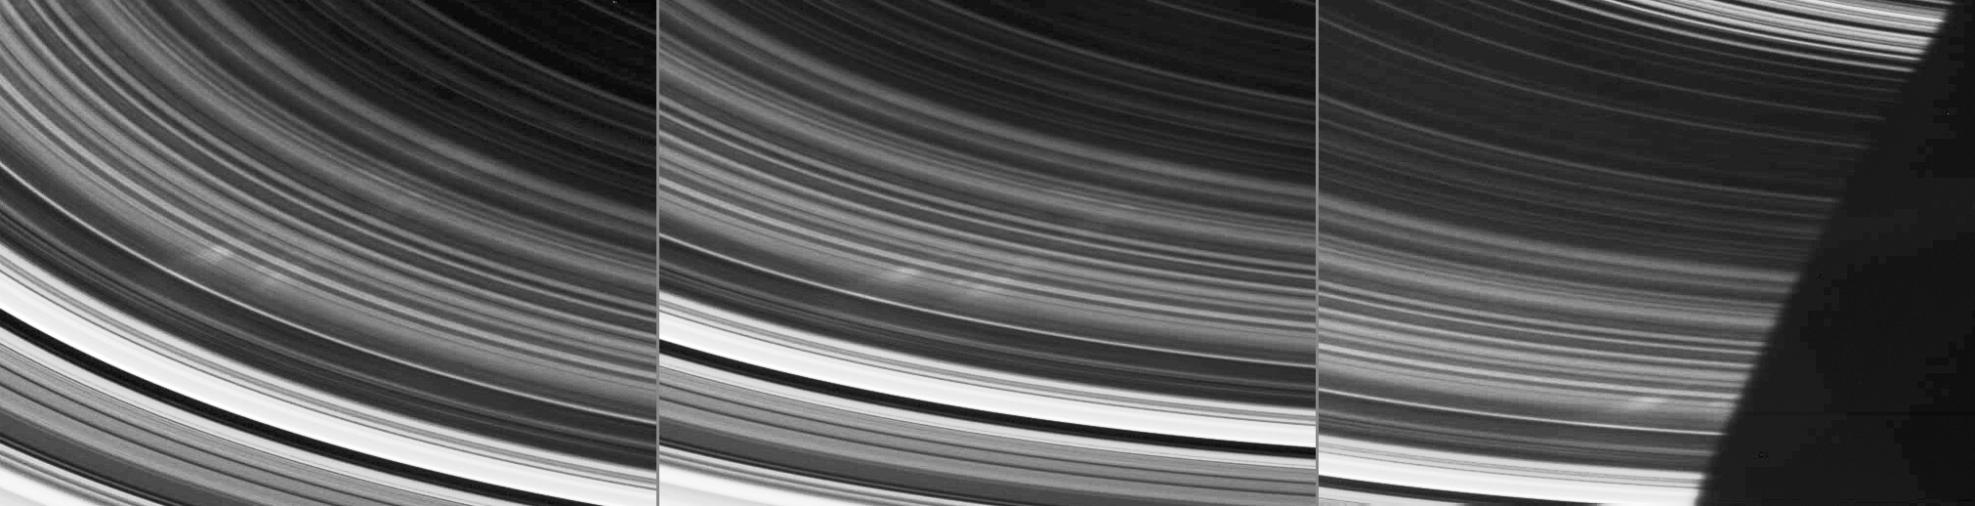 Пятна на кольцах Сатурна, заснятые зондом "Кассини" в 2005 году. Фото ©  NASA